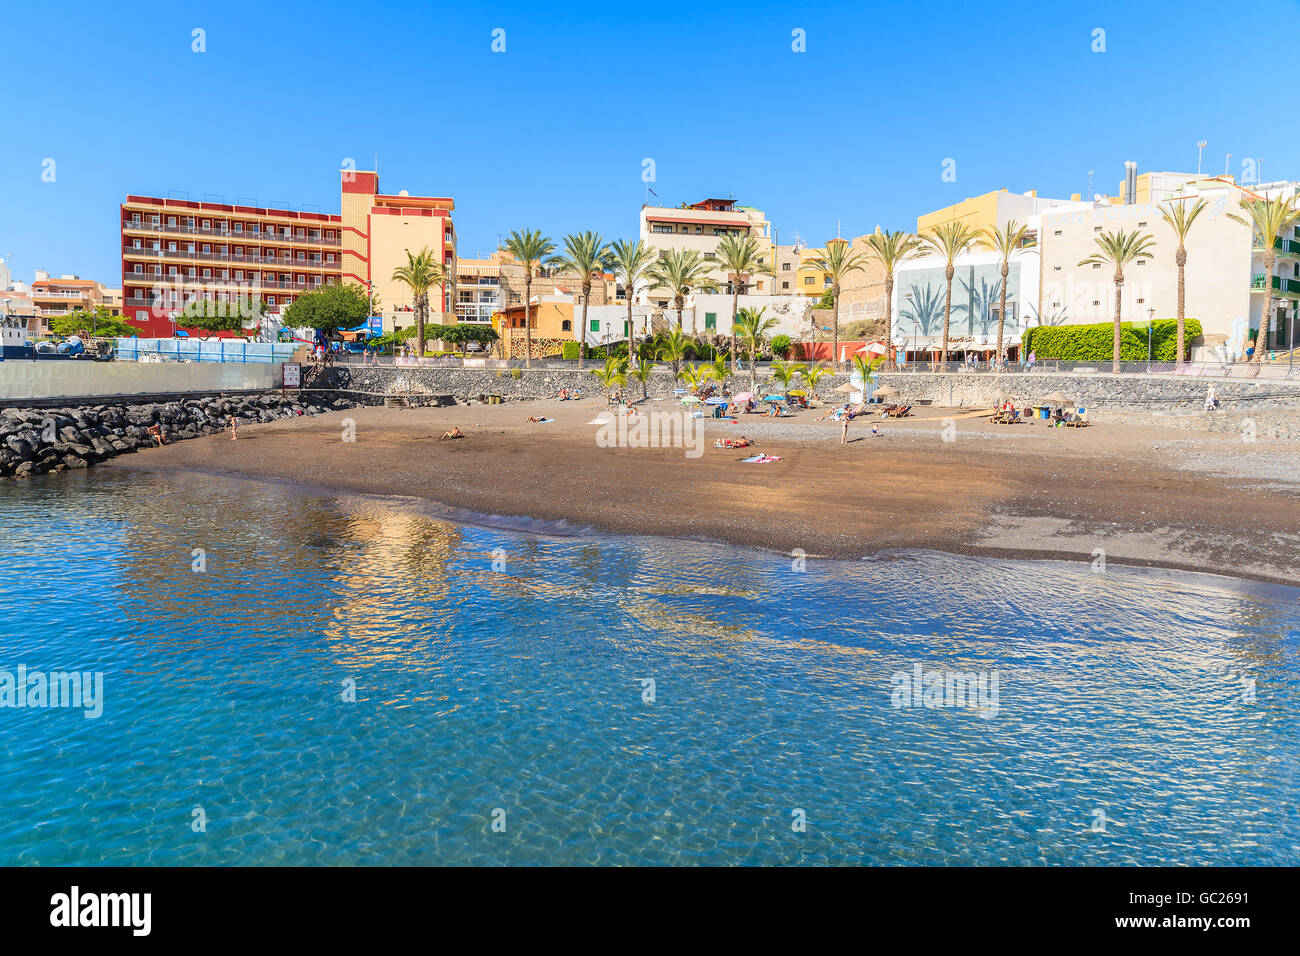 La playa de San Juan, la isla de Tenerife - 18 Nov, 2015: Playa de San Juan pueblo. Es un pequeño puerto de pescadores en el sur de Tenerife, Islas Canarias Foto de stock